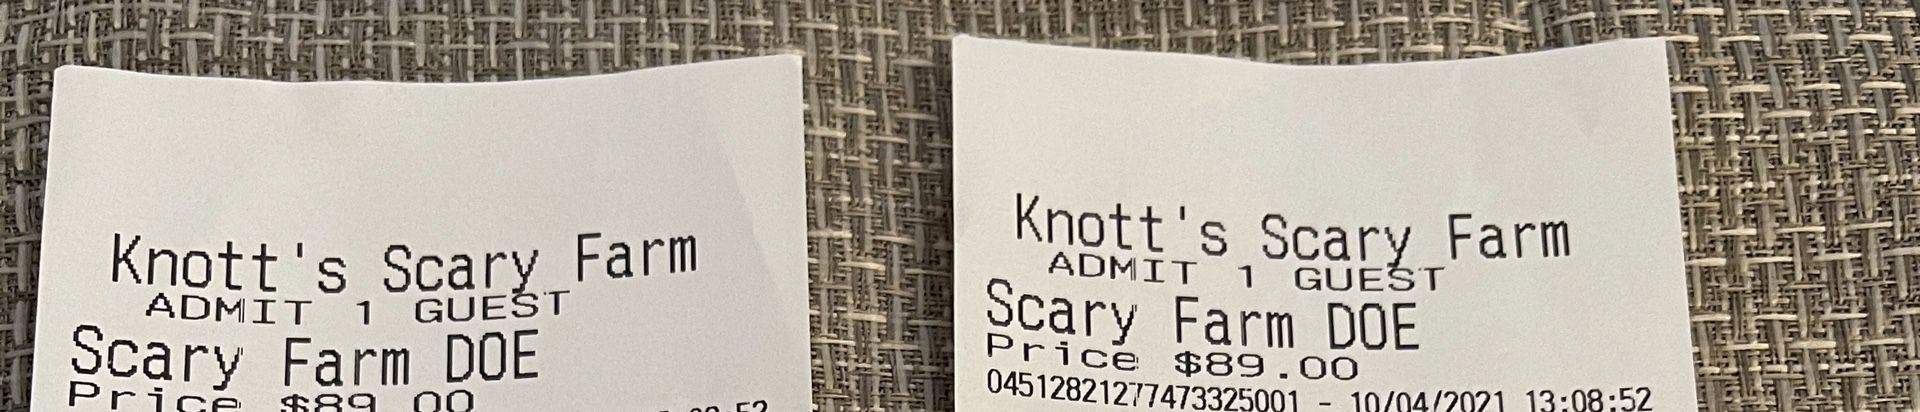 Knotts Scary Farm Tickets 